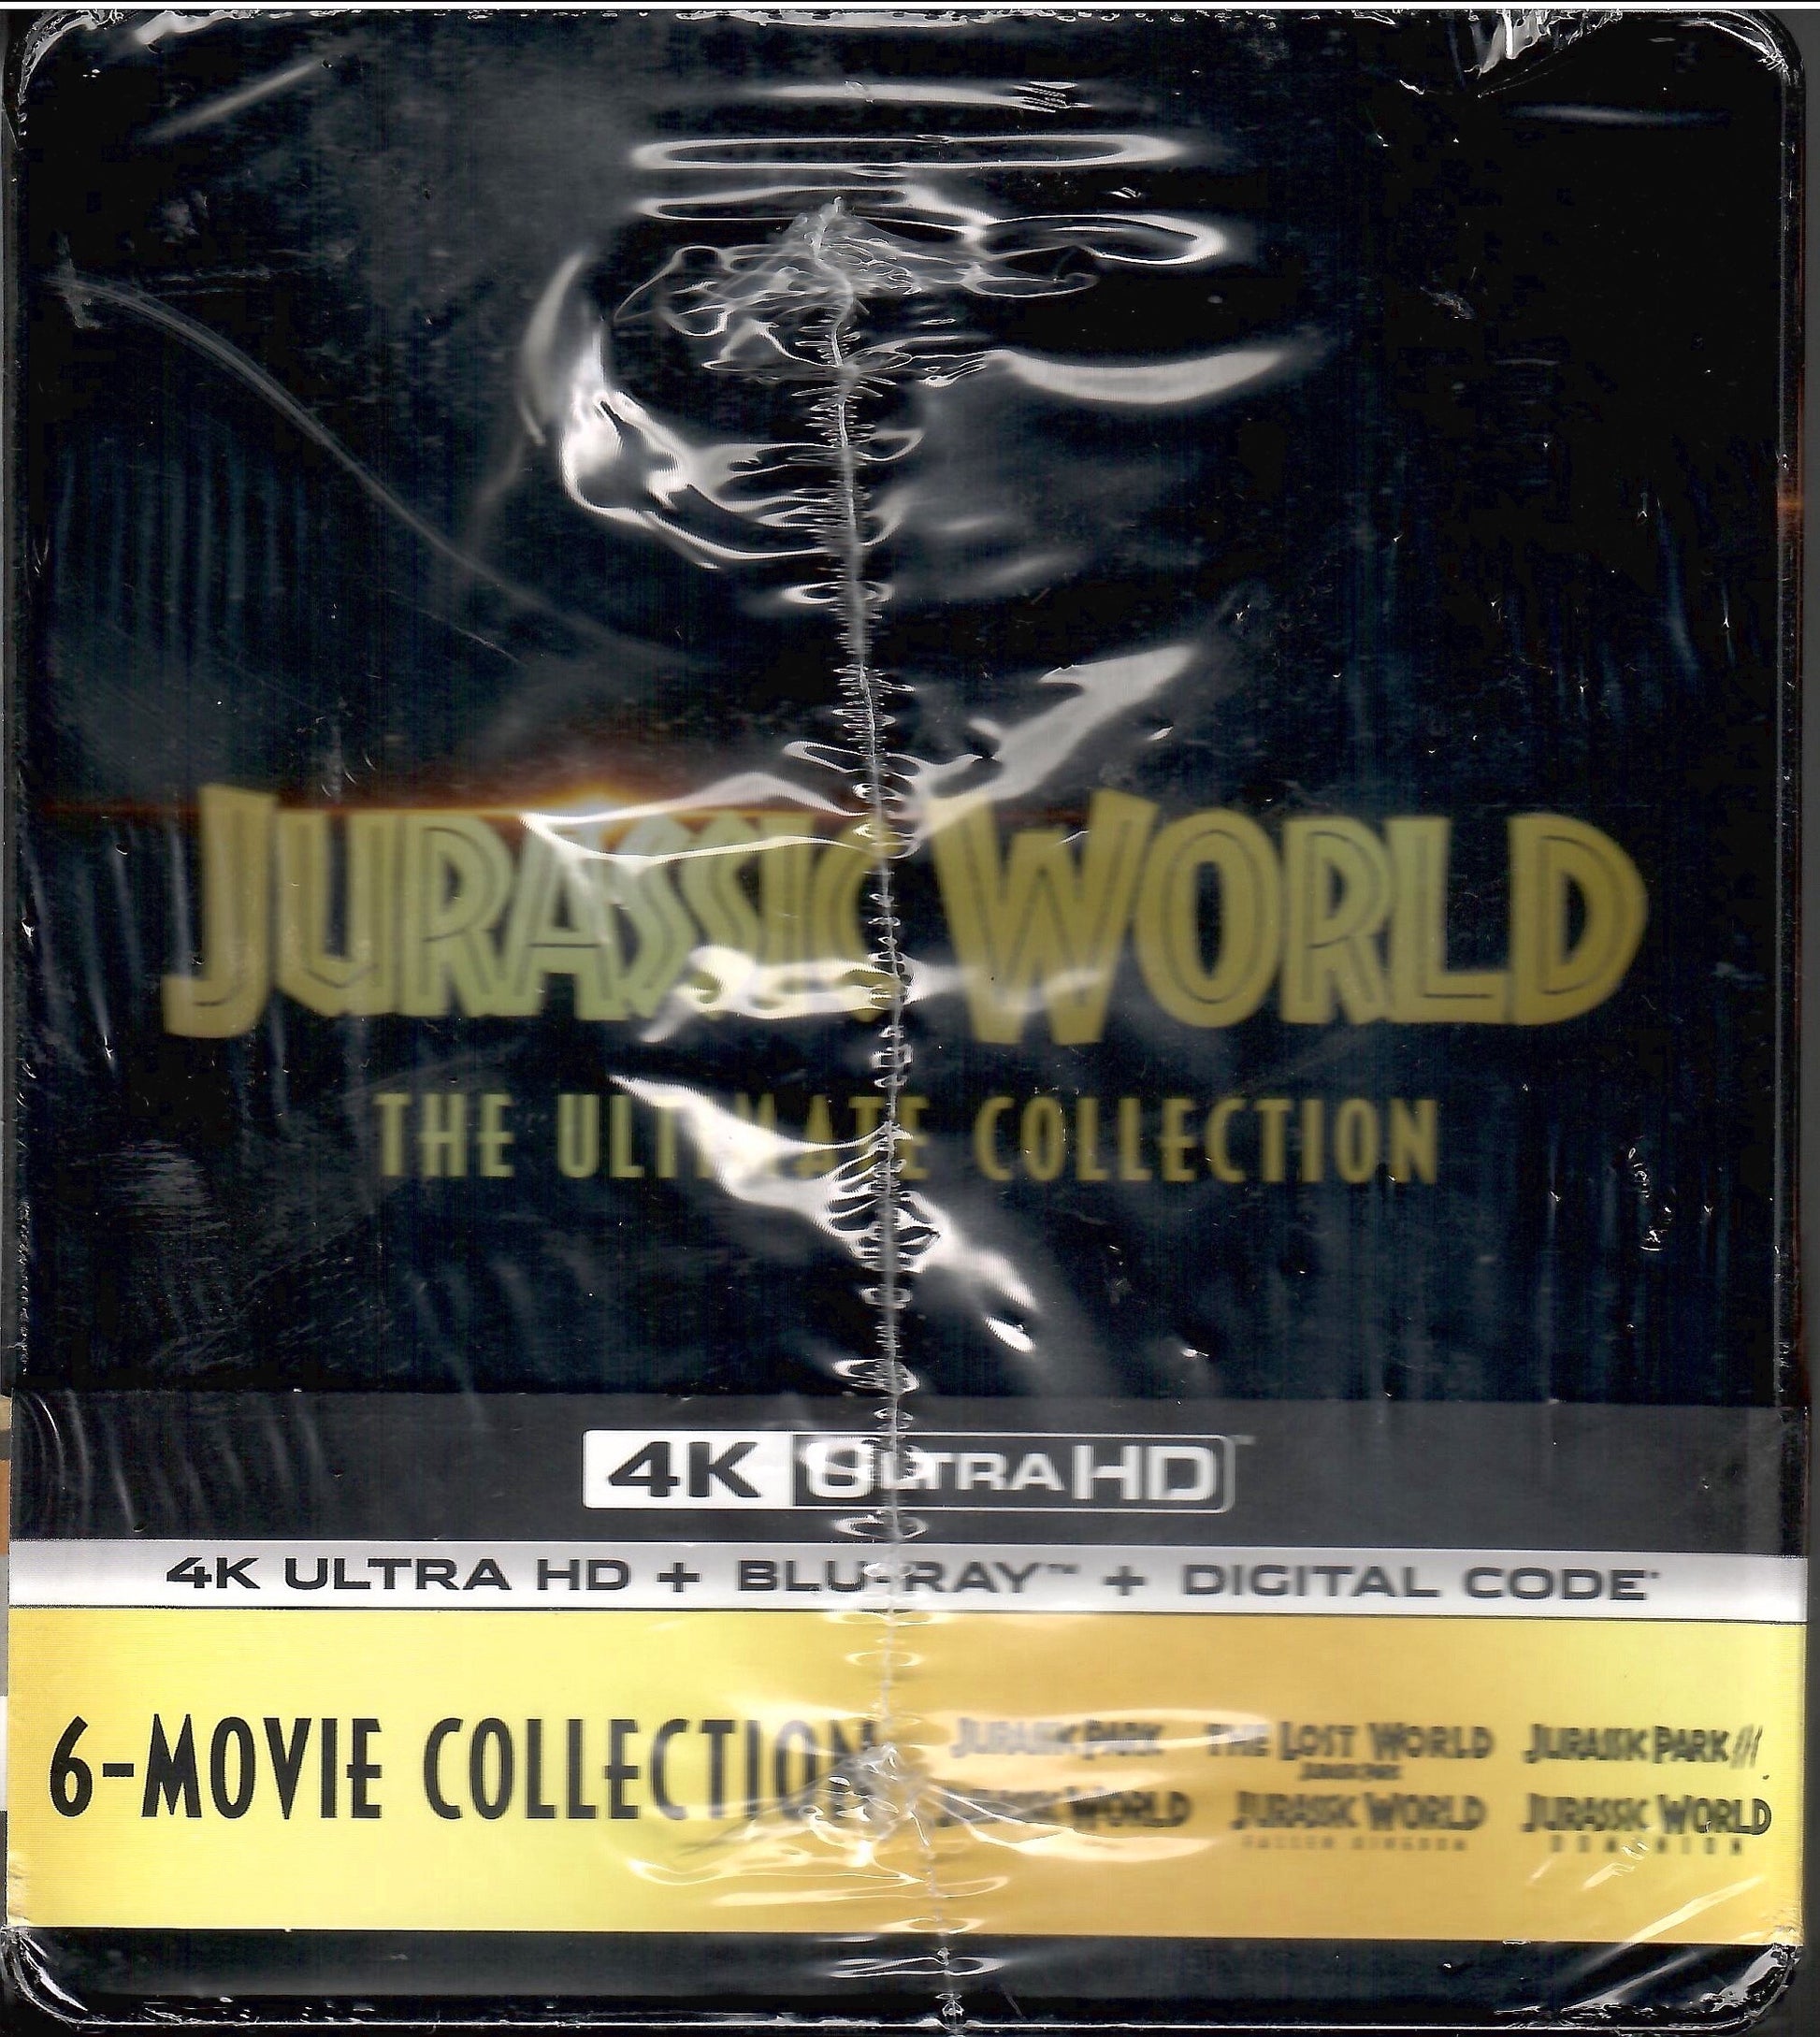 Jurassic World: Das gefallene Königreich (Ultra HD Blu-ray & Blu-ray im  Steelbook) (1 Ultra HD Blu-ray und 1 Blu-ray Disc) – jpc